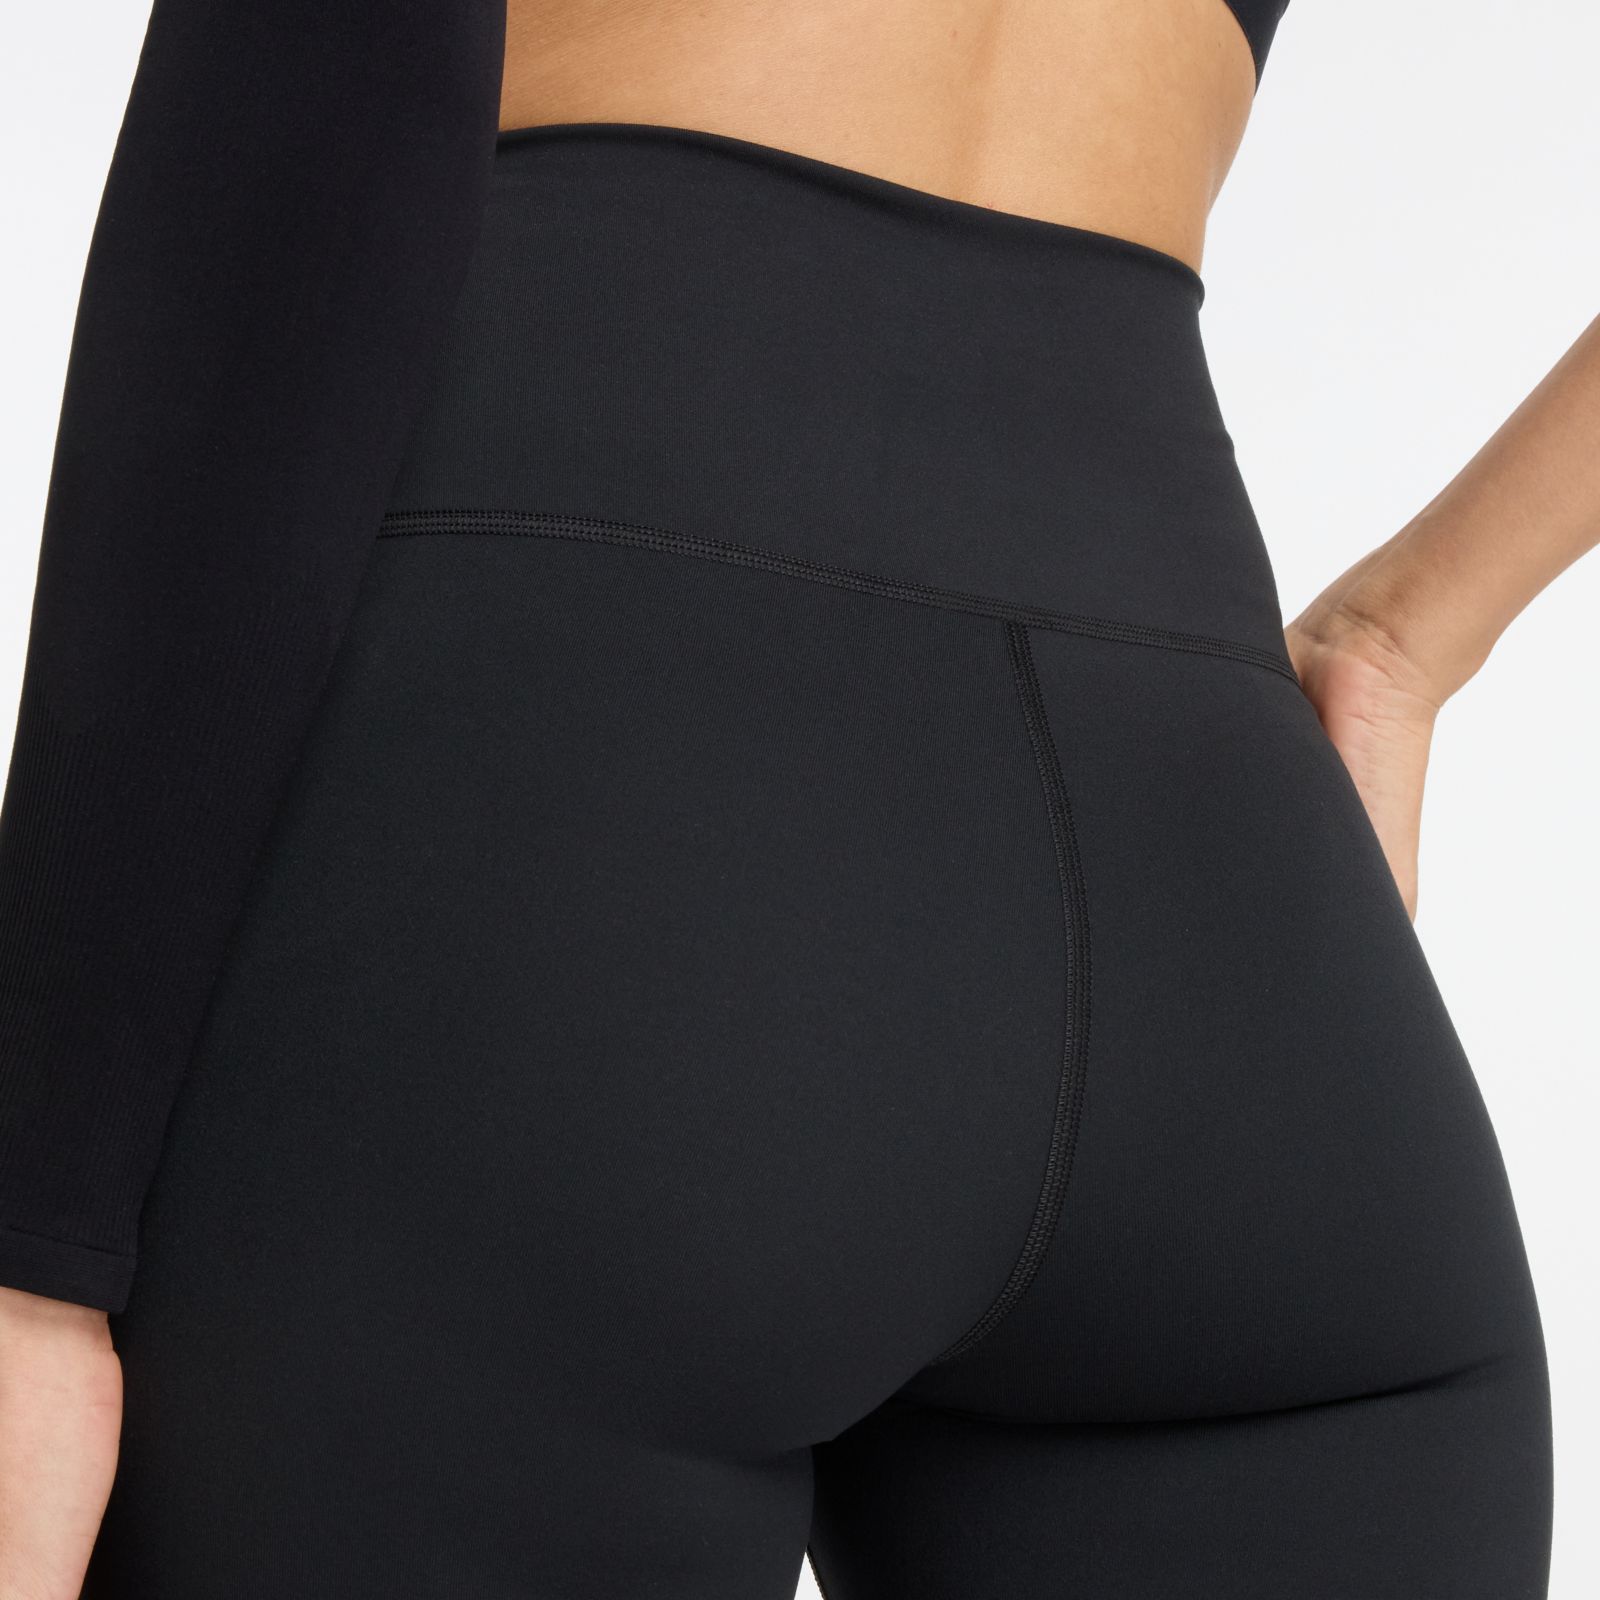 Buy New Balance women high rise brand logo leggings black Online